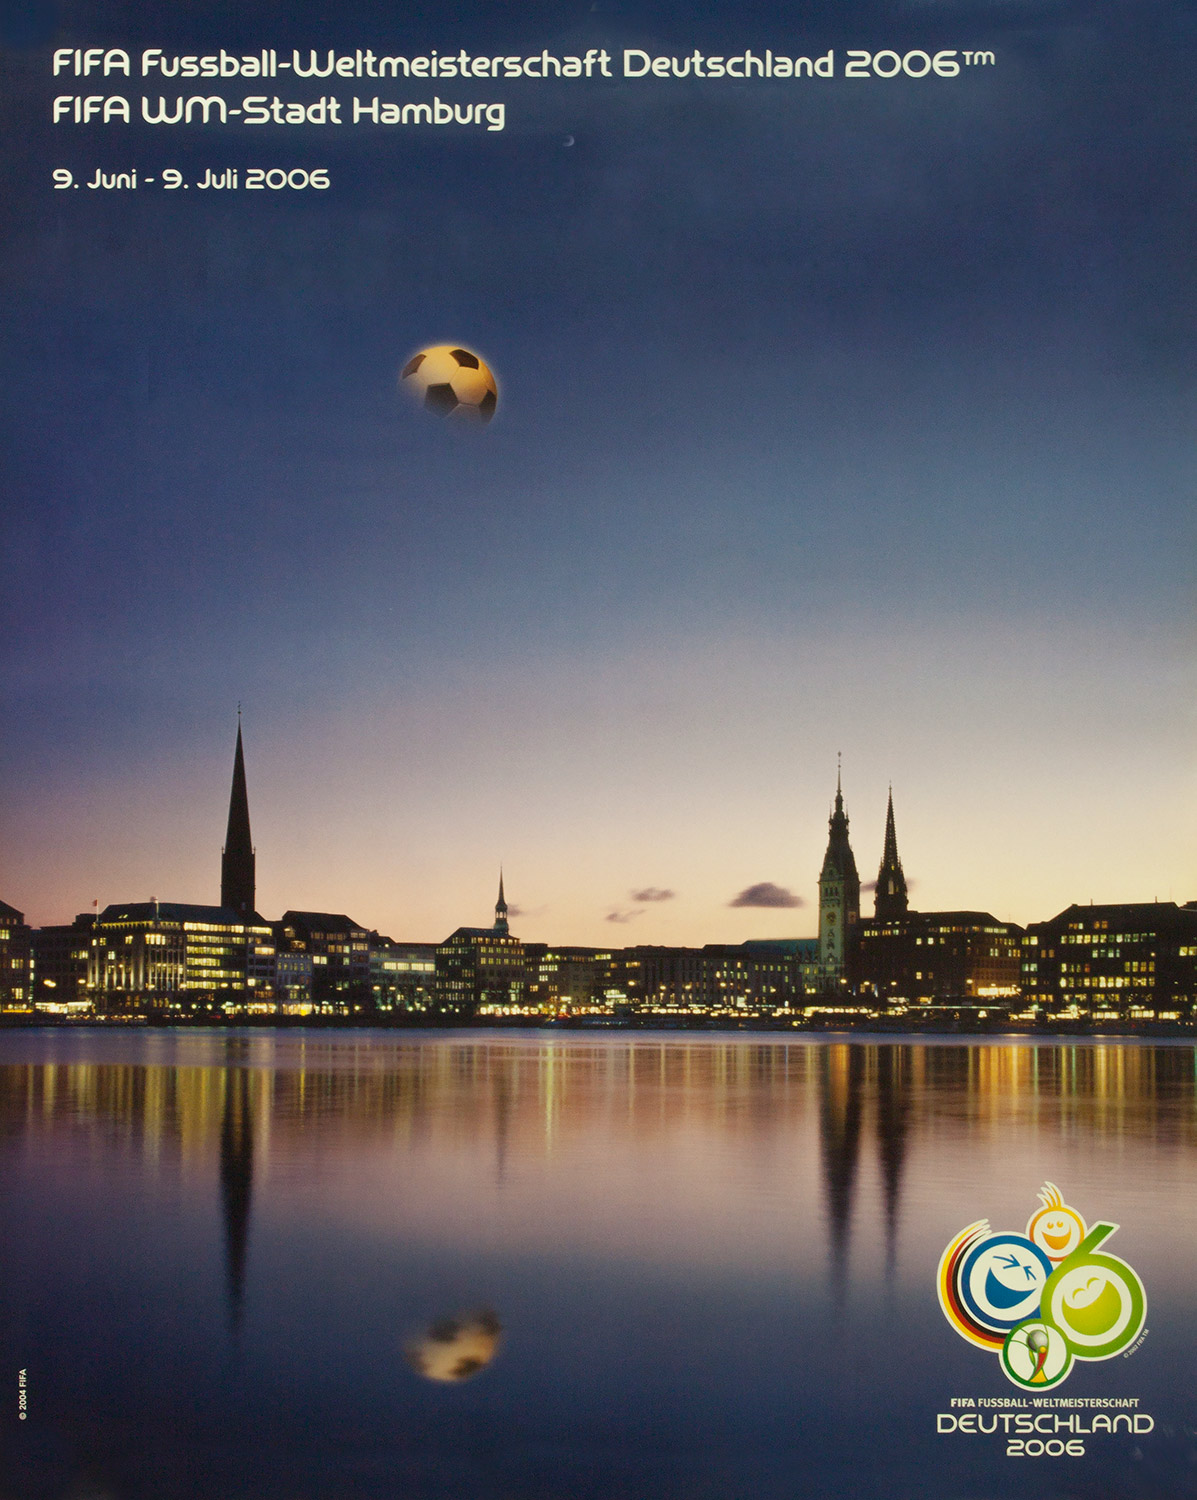 Plakat mit Abbildung der Stadt Hamburg bei Dämmerung, darüber der Mond als Fußball.